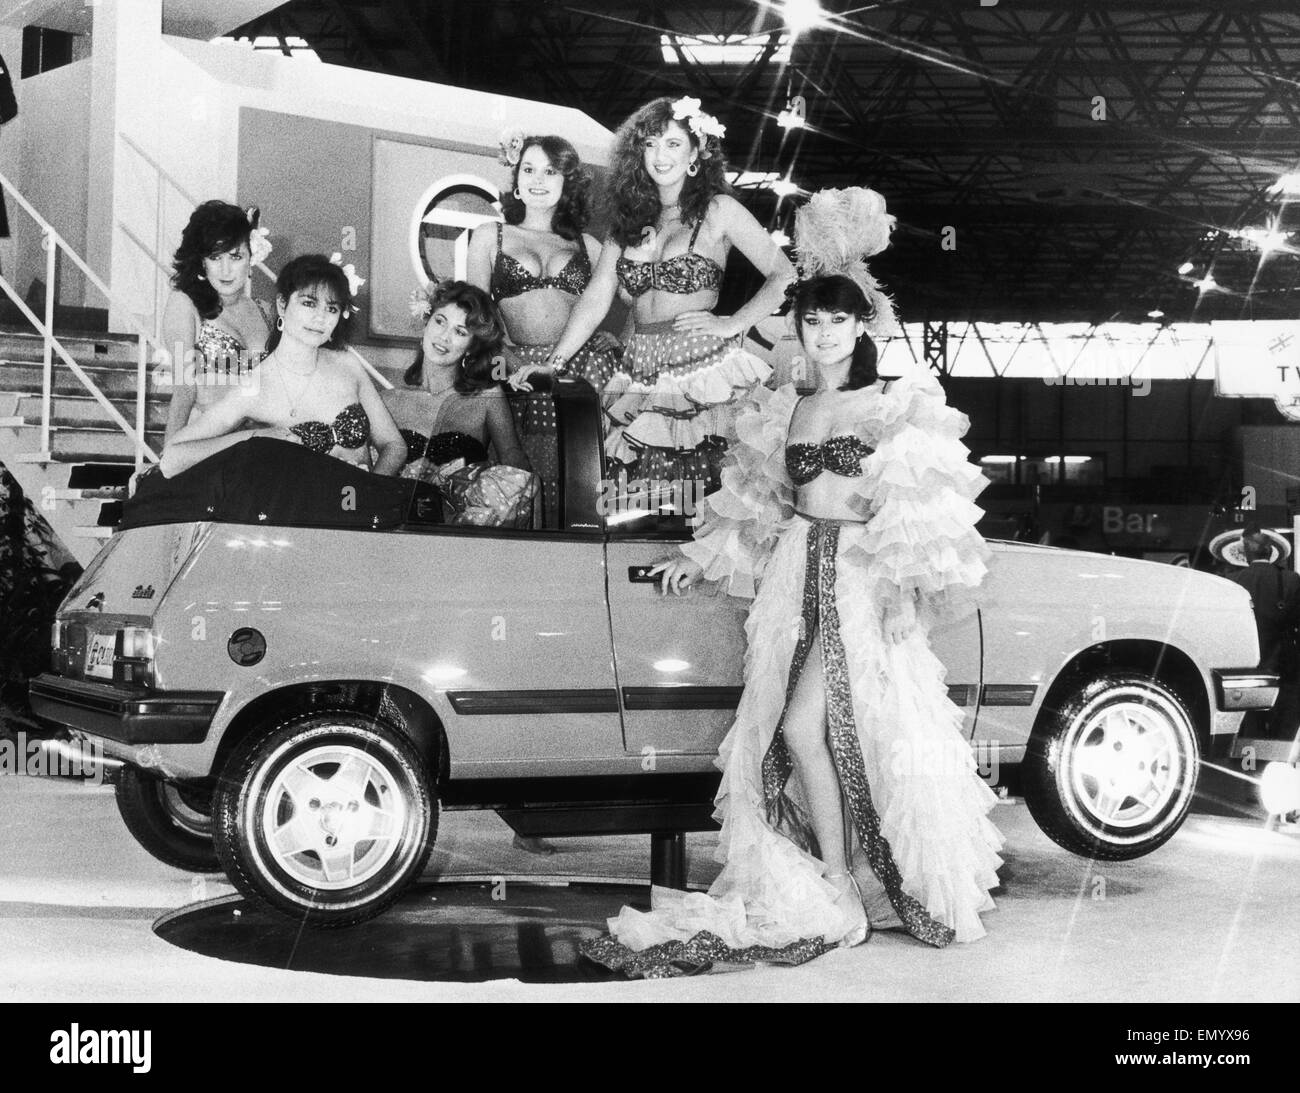 Les modèles posent en robe d'Amérique du Sud à côté du dernier modèle à venir de fabricants automobiles Talbot. Le Samba est une petite berline à hauteur contre les routiers en métro. La Samba vu ici d'être lancé à l'automobile de 1982 à la n.c.a. 19 Octobre 1982 Banque D'Images